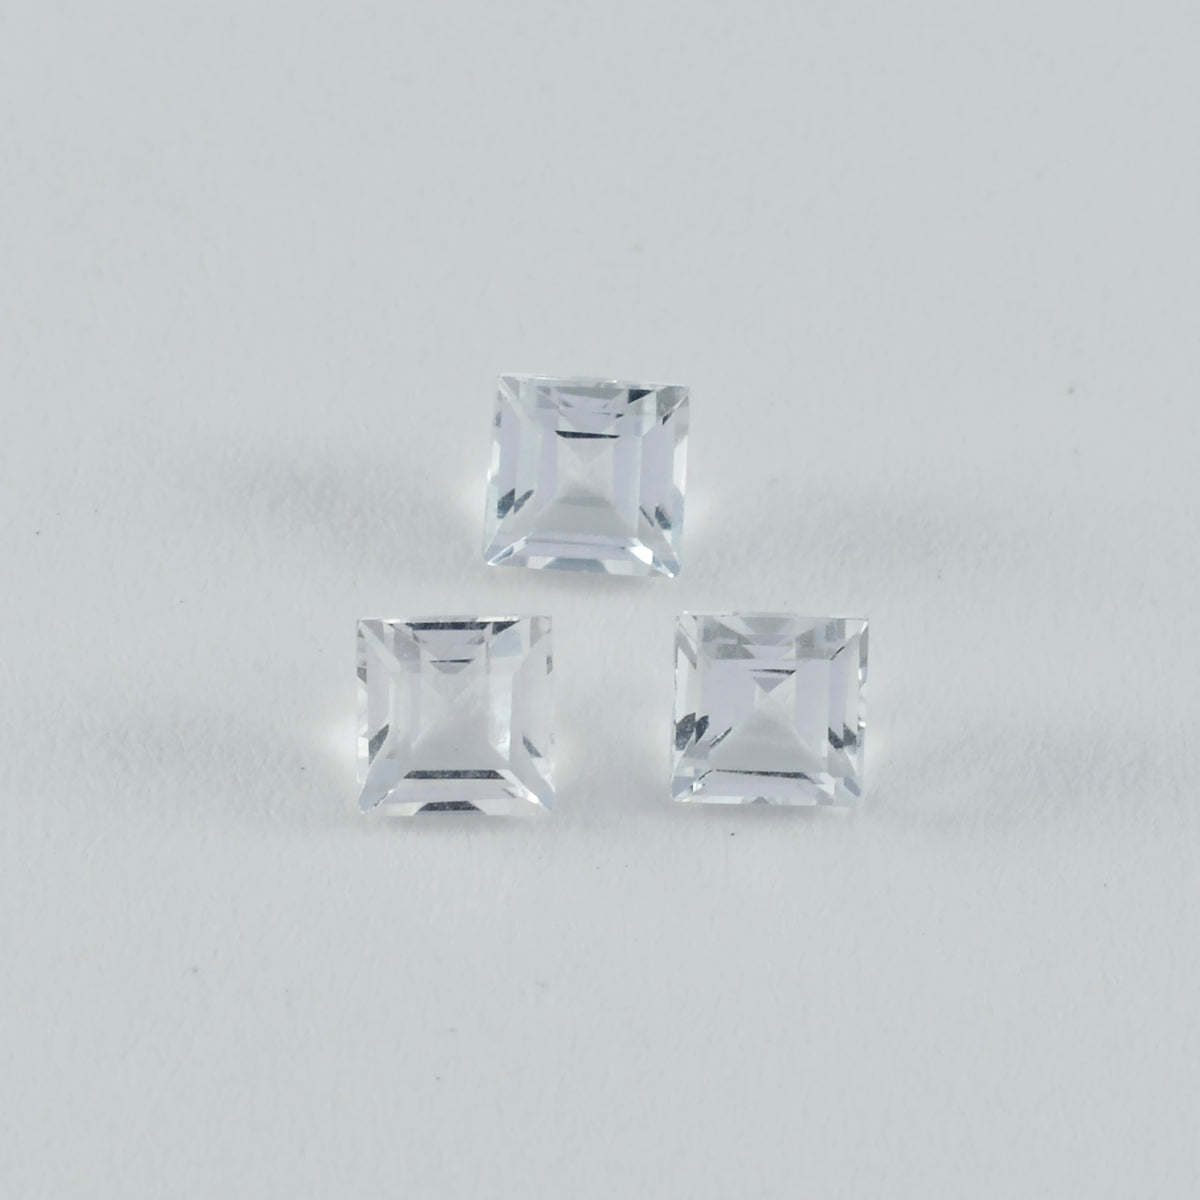 riyogems 1 шт., белые кристаллы кварца, ограненные, 5x5 мм, квадратной формы, красивые качественные свободные драгоценные камни